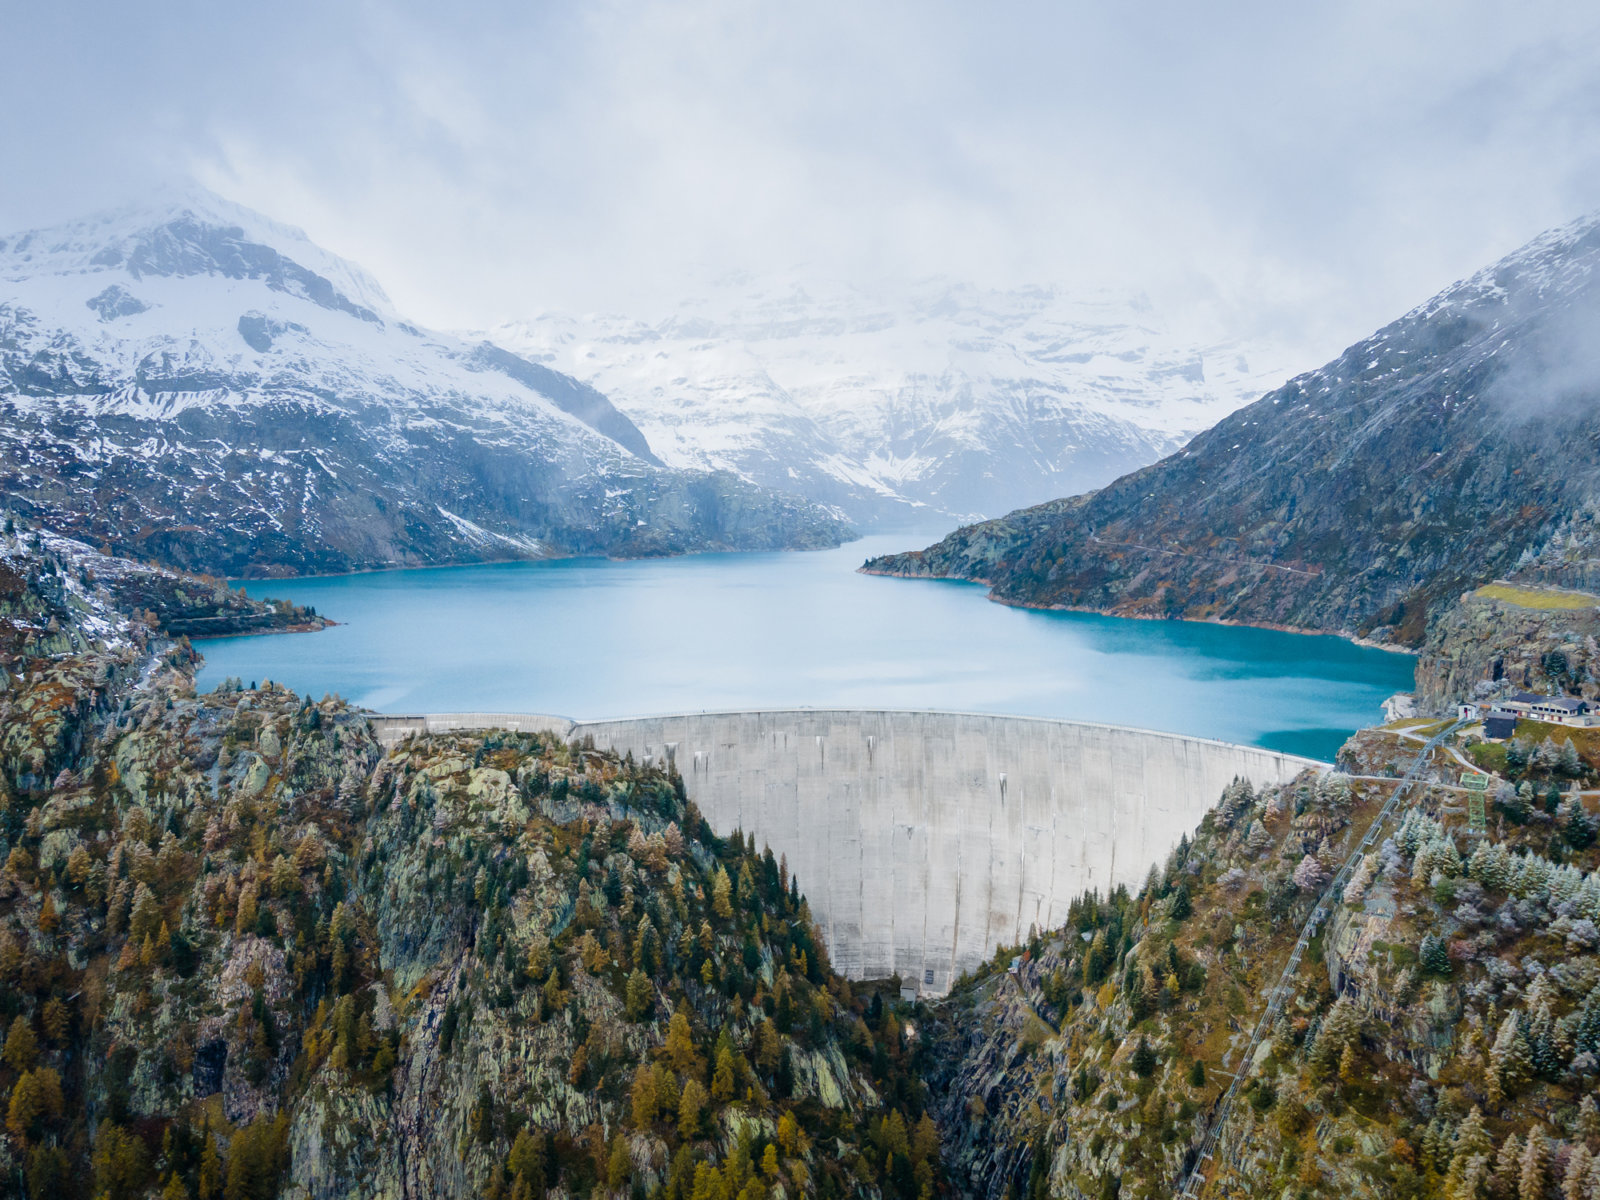 Emosson Dam Hydropower in Switzerland